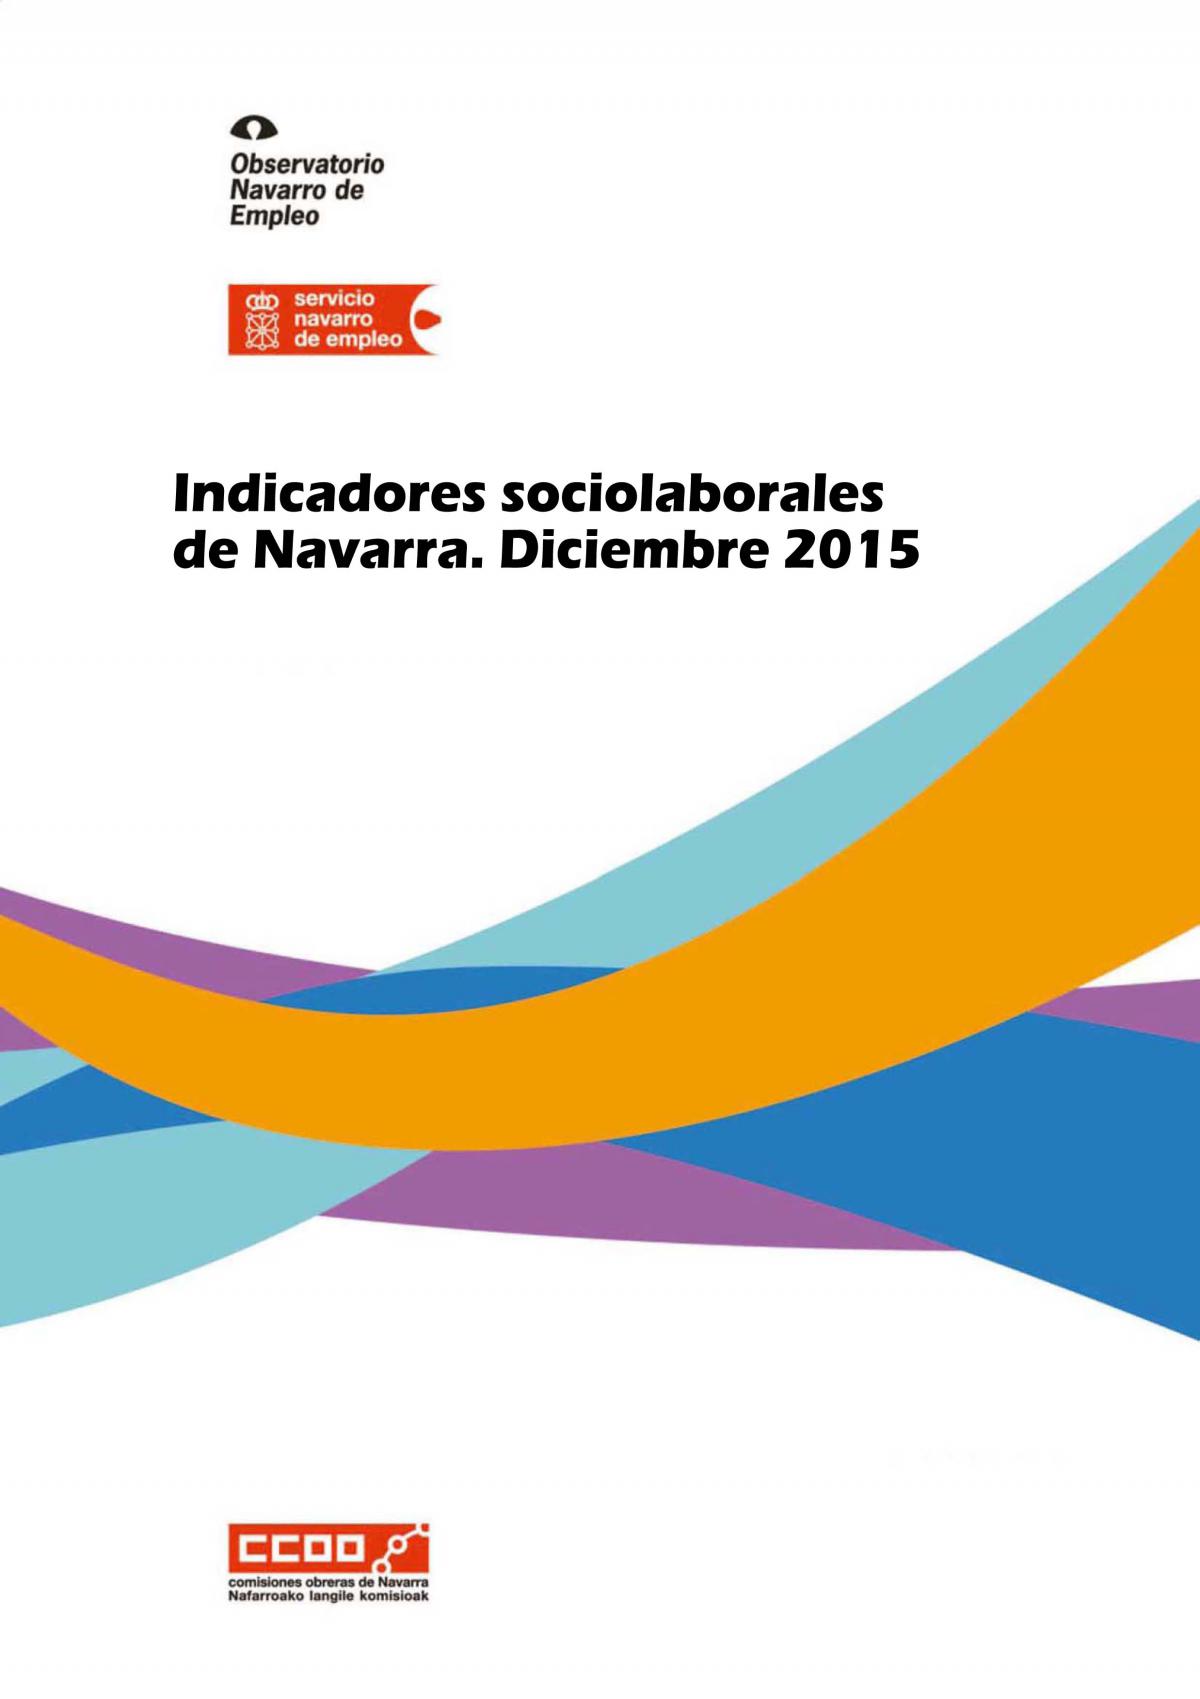 Indicadores sociolaborales de Navarra diciembre 2015